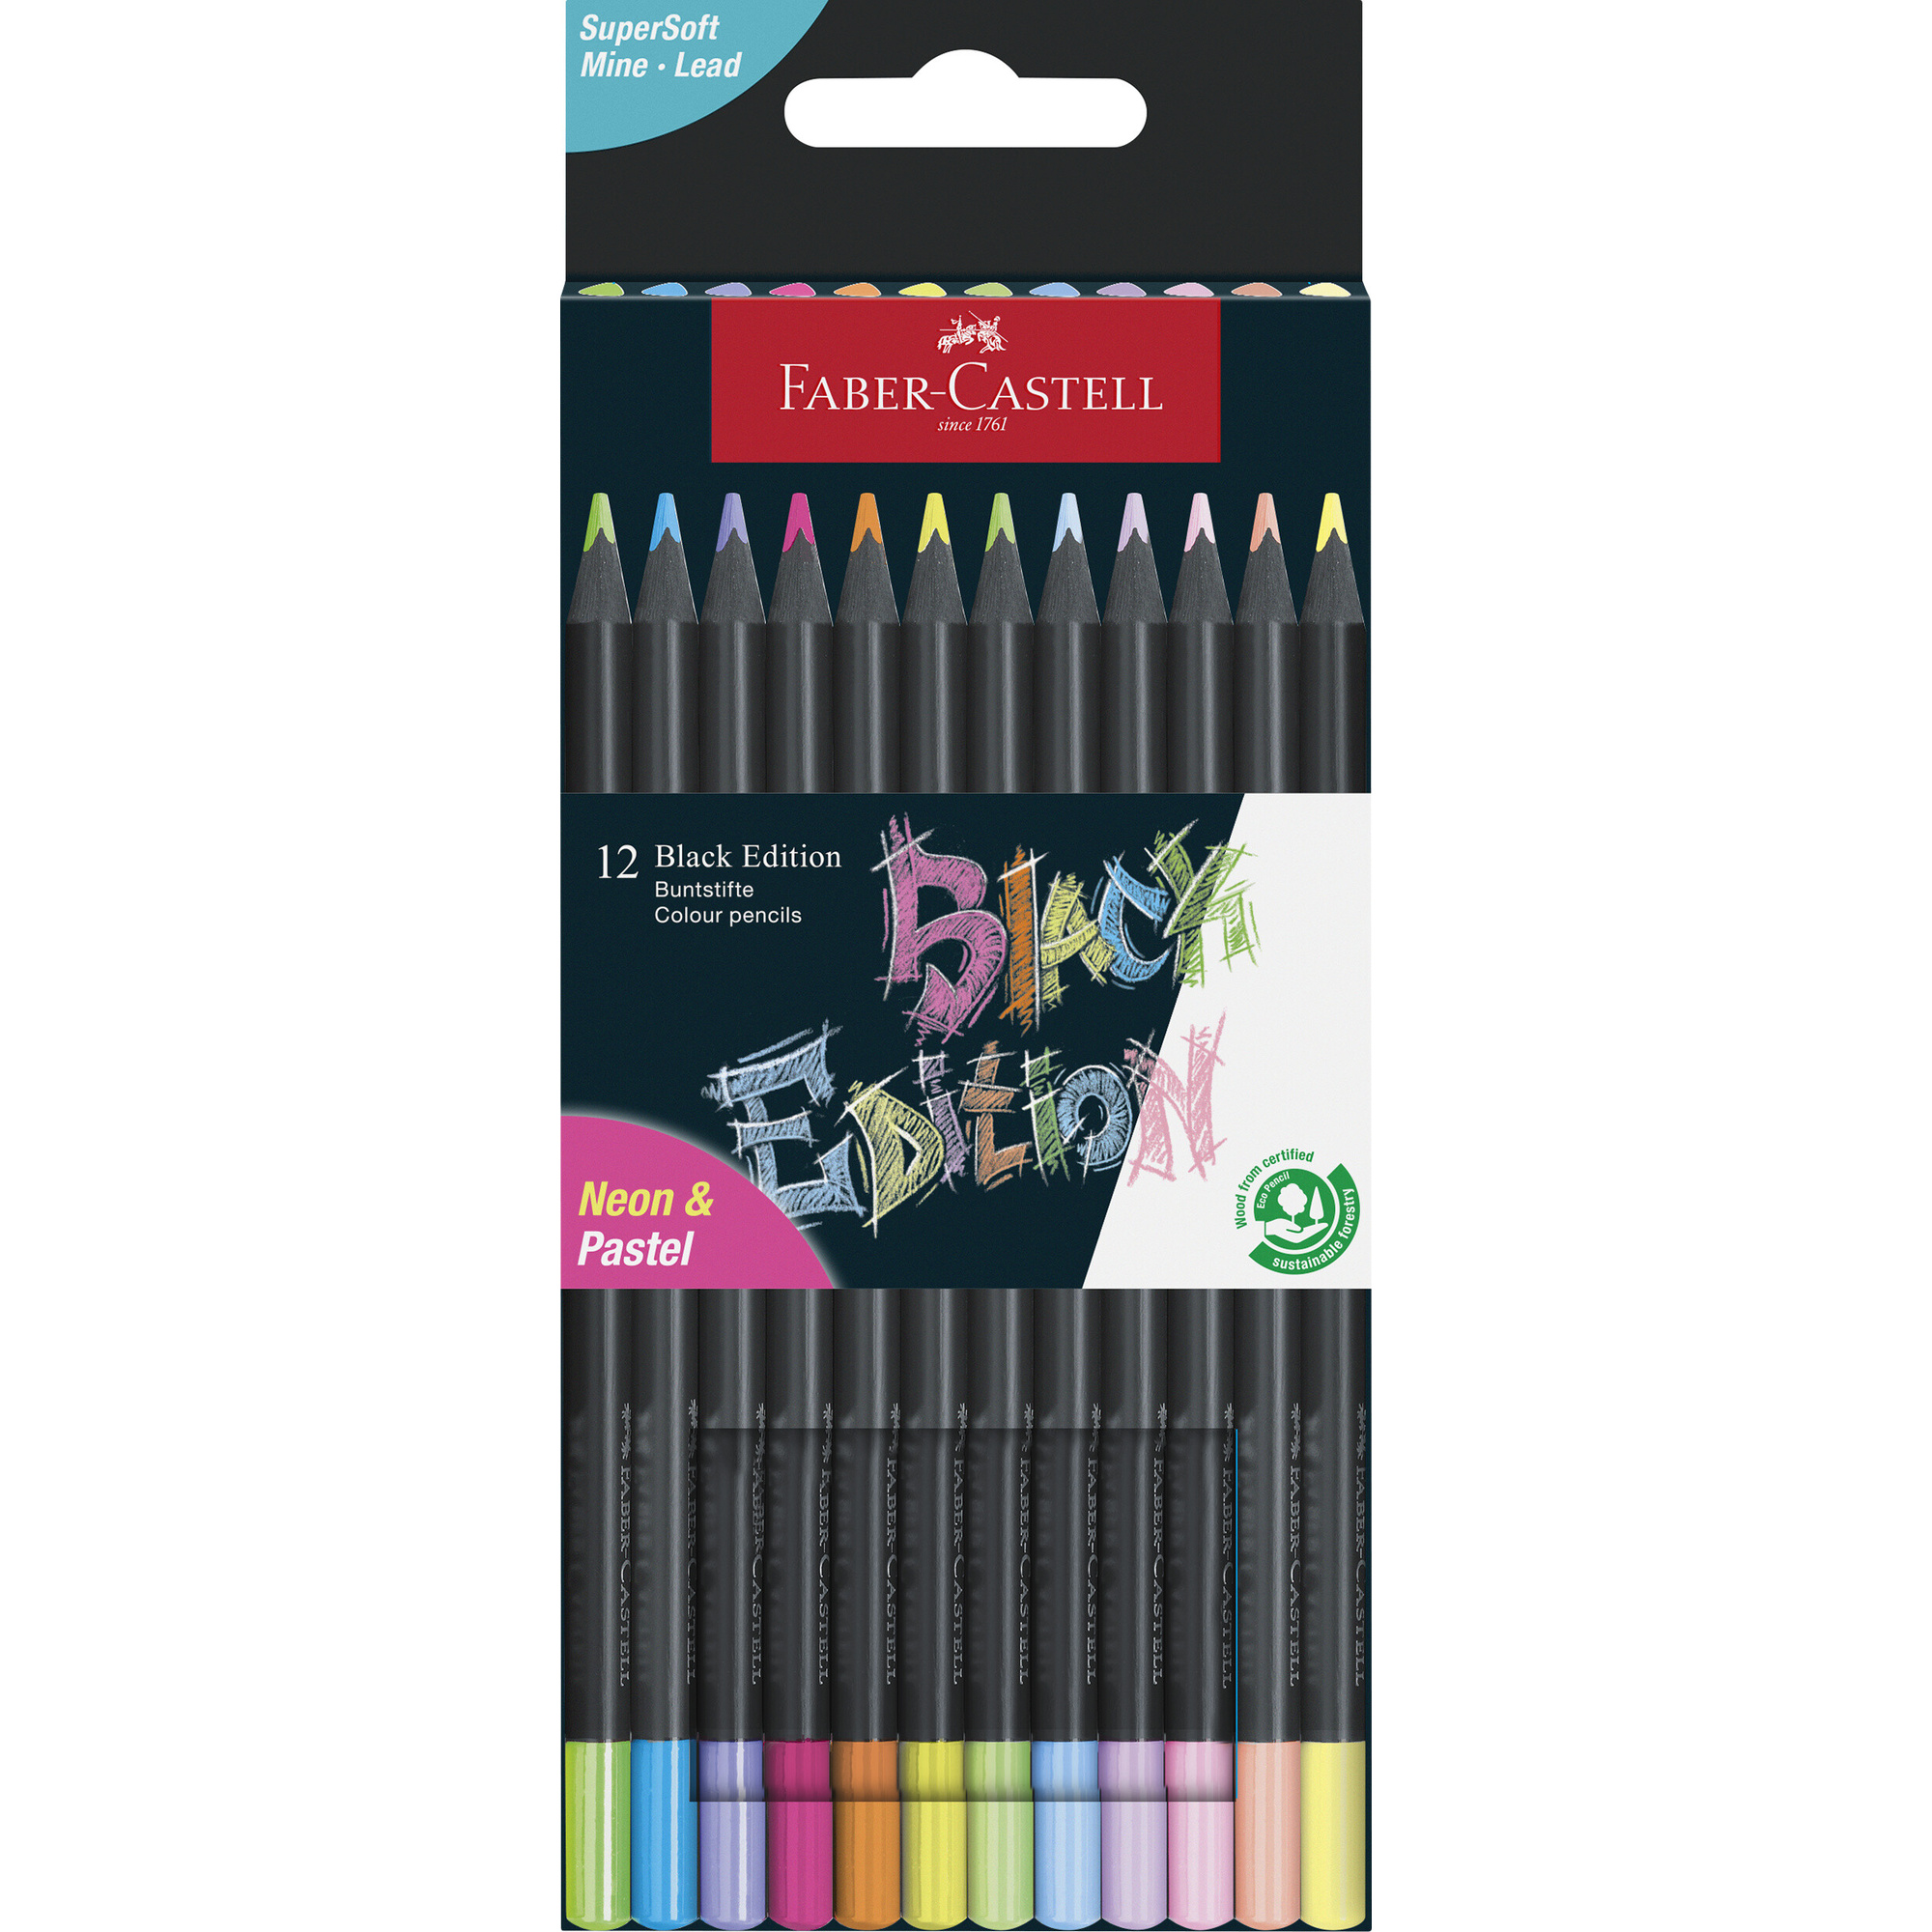 Astuccio in cartone da 12 matite colorate black edition neon + pastel - -- No Brand --